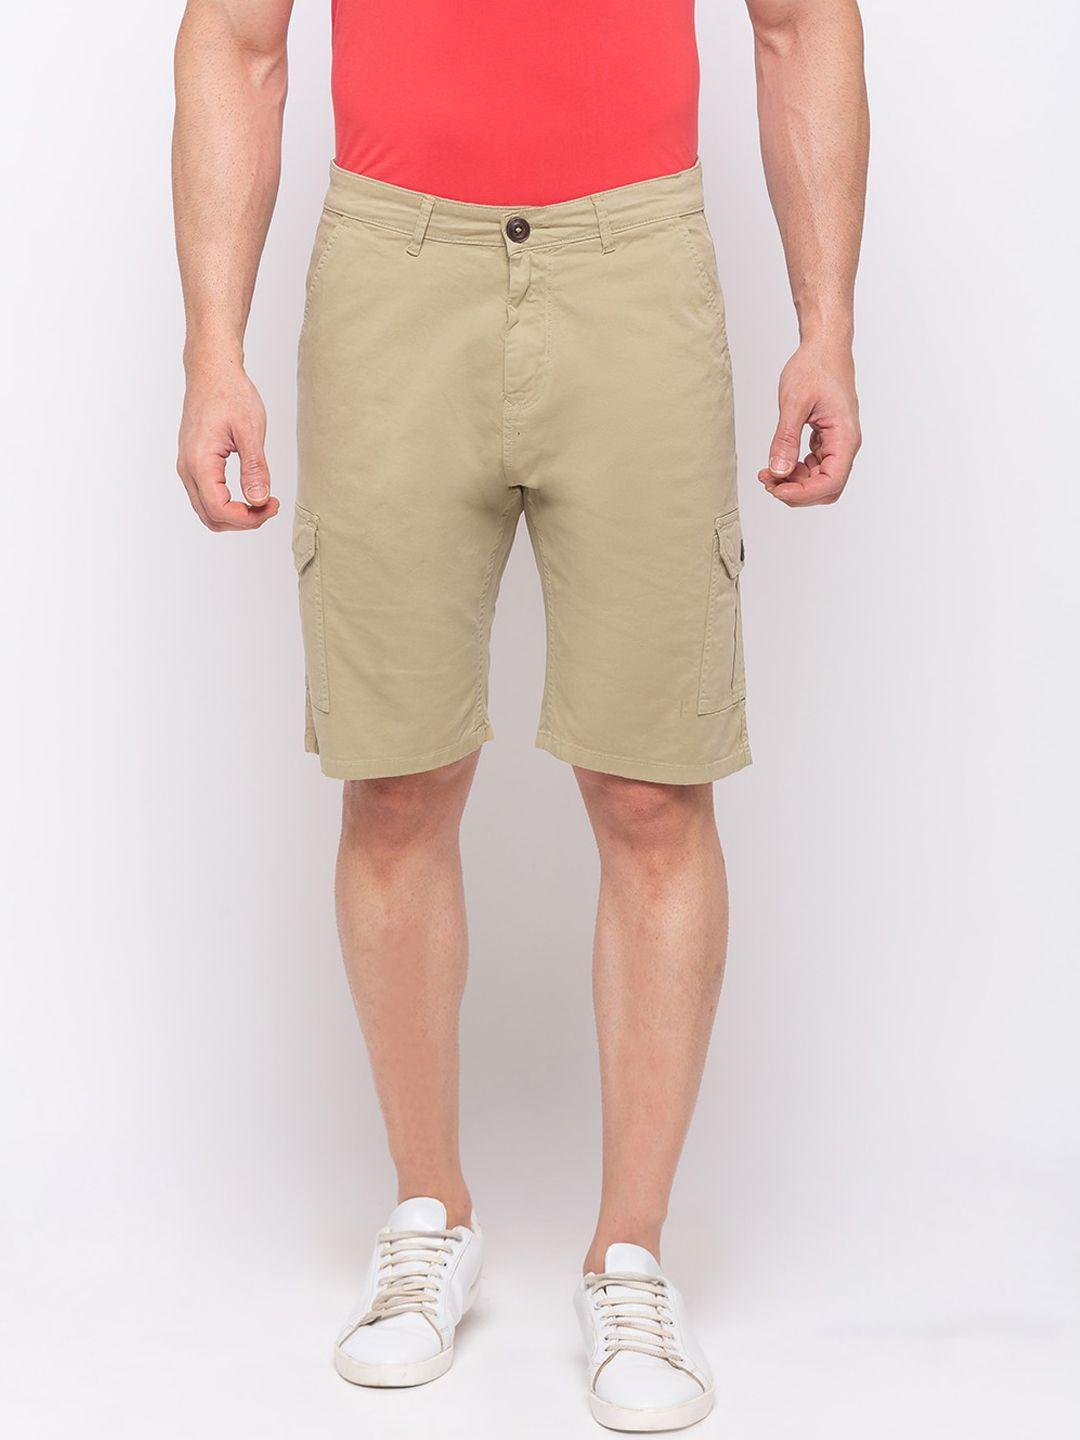 status quo men beige cargo shorts